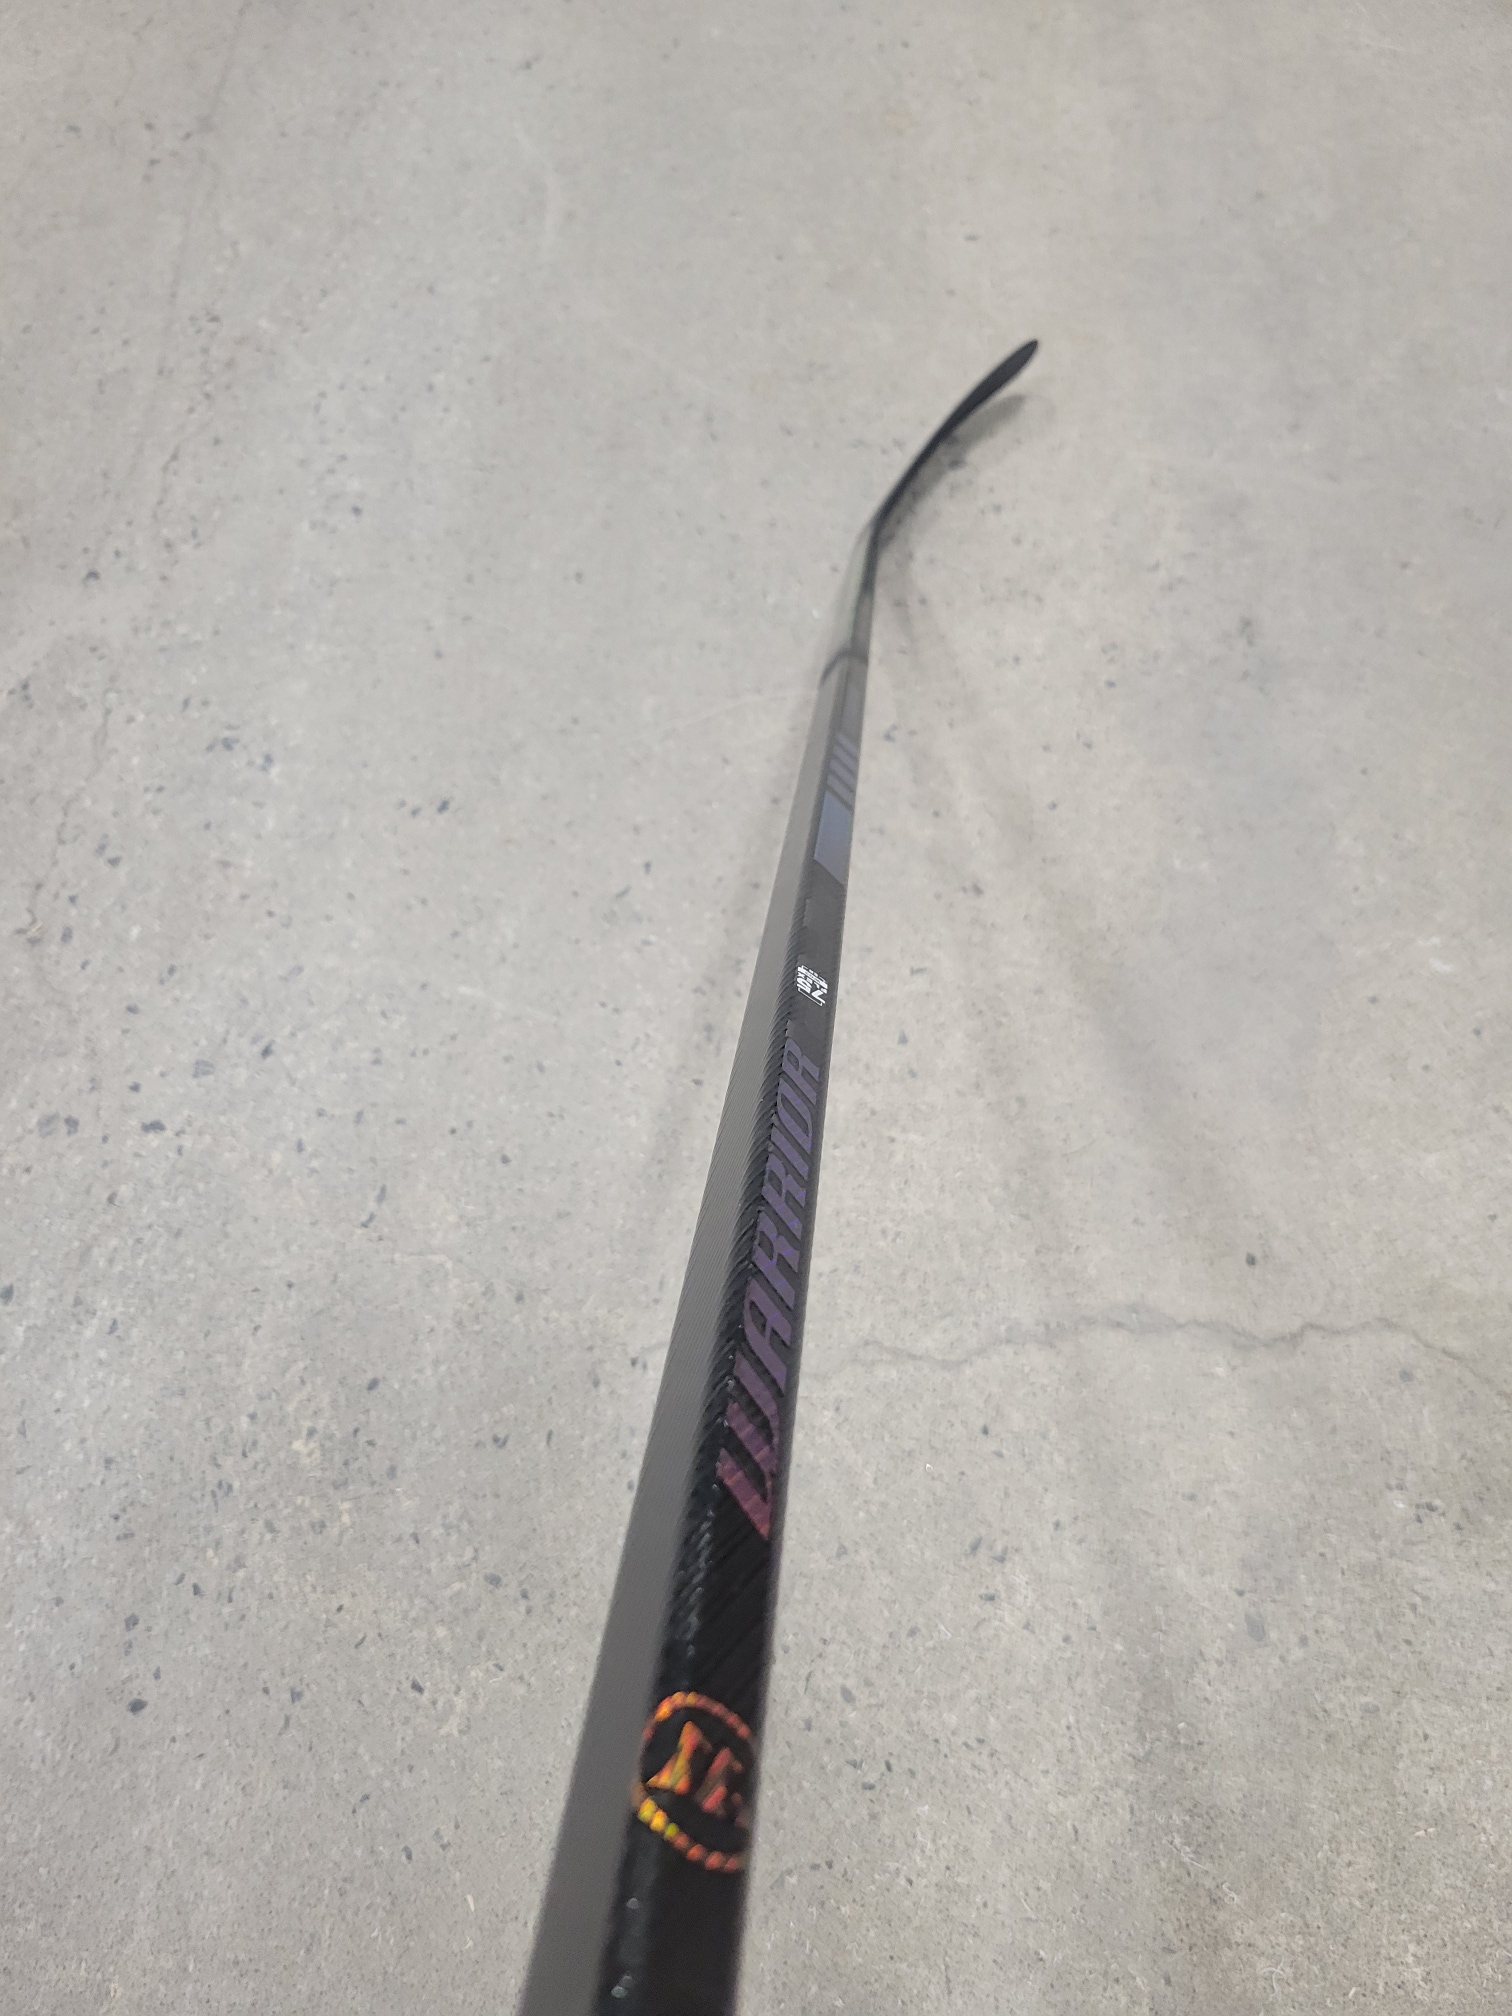 New Left Hand Warrior Super Novium Hockey Stick W03 75 flex